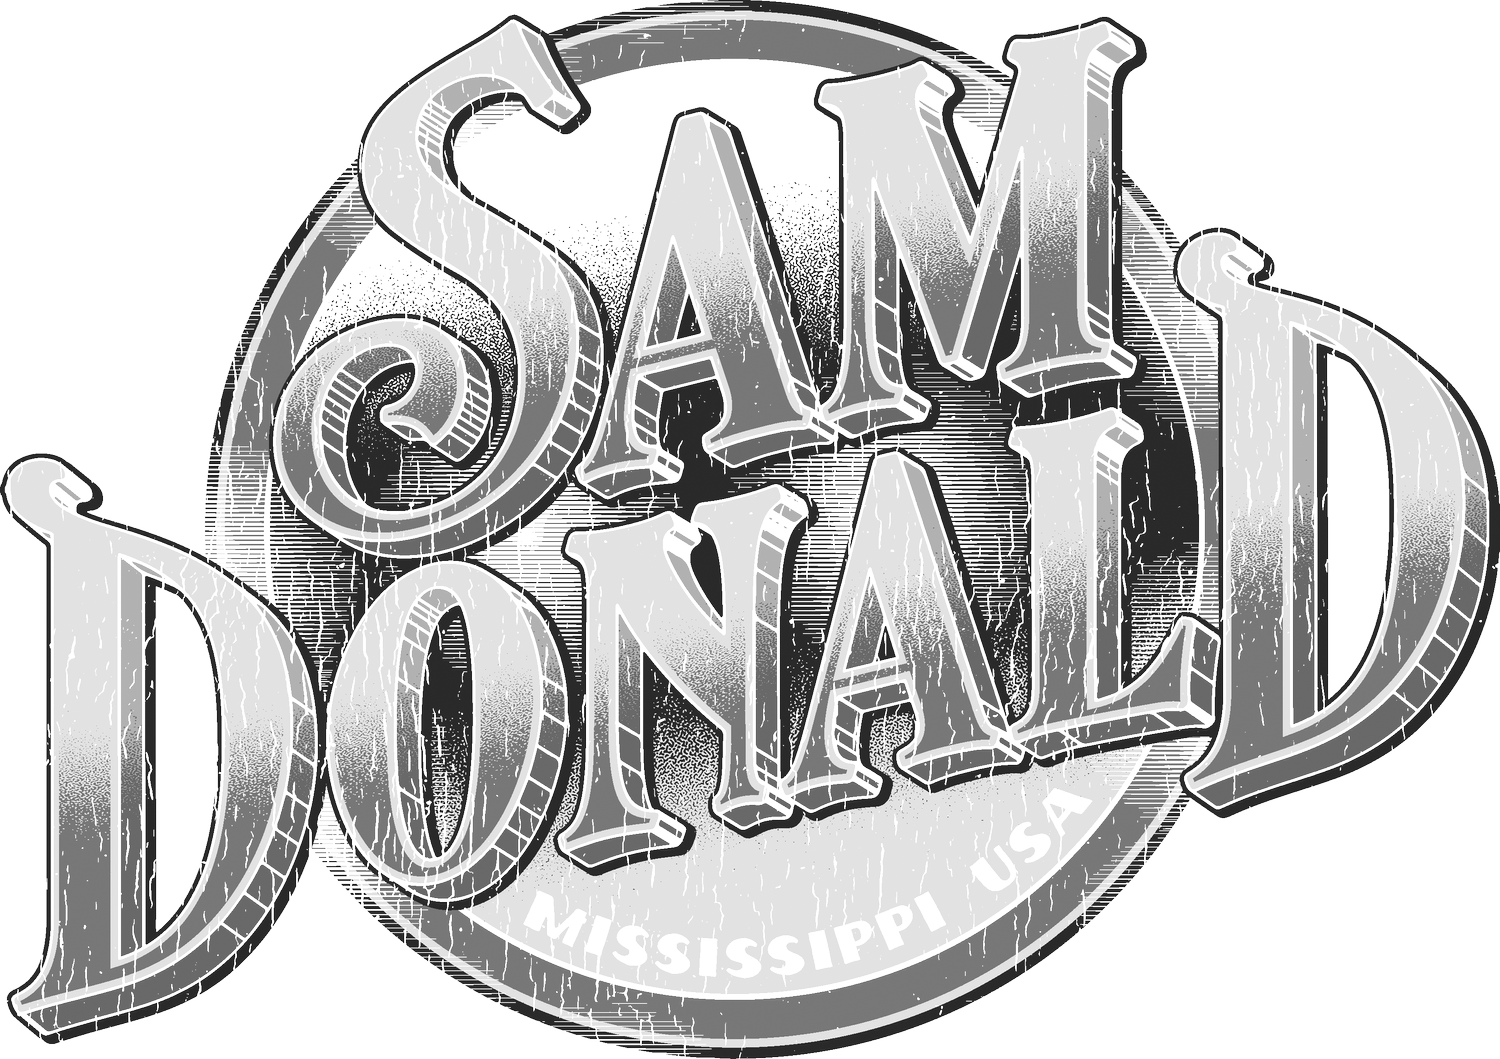 Sam Donald Official